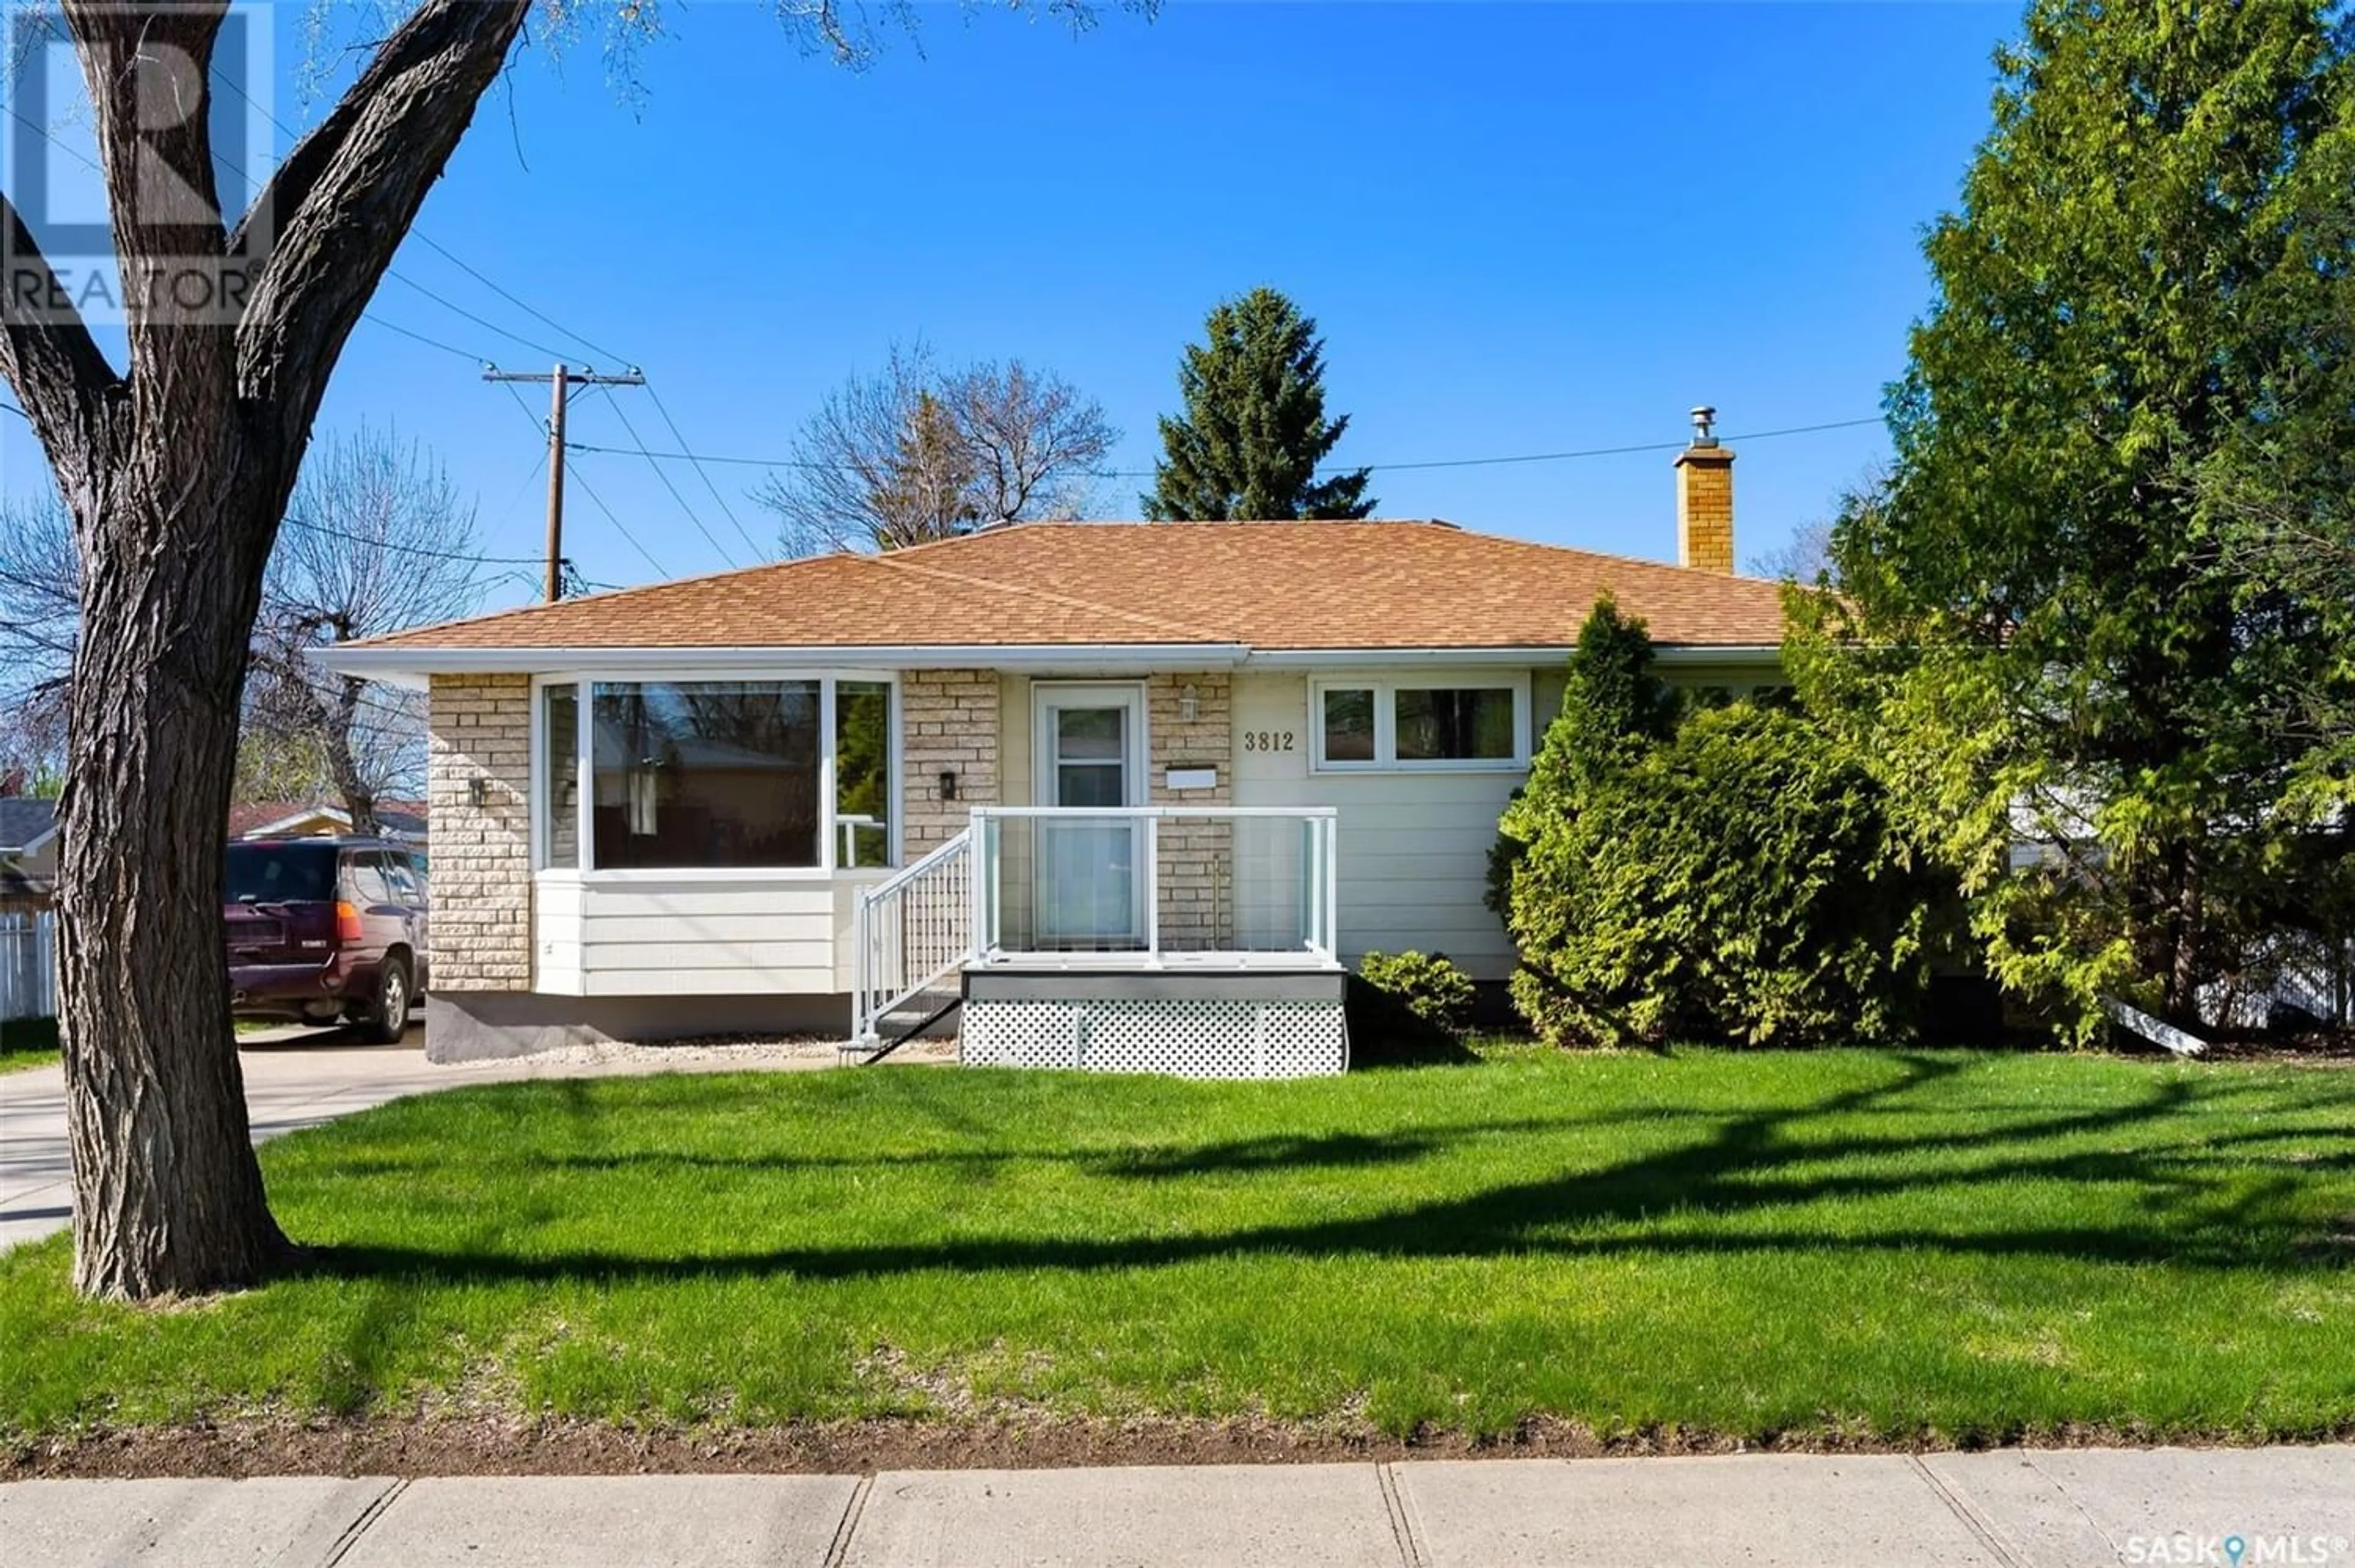 Frontside or backside of a home for 3812 Van Horne AVENUE, Regina Saskatchewan S4S0Y4